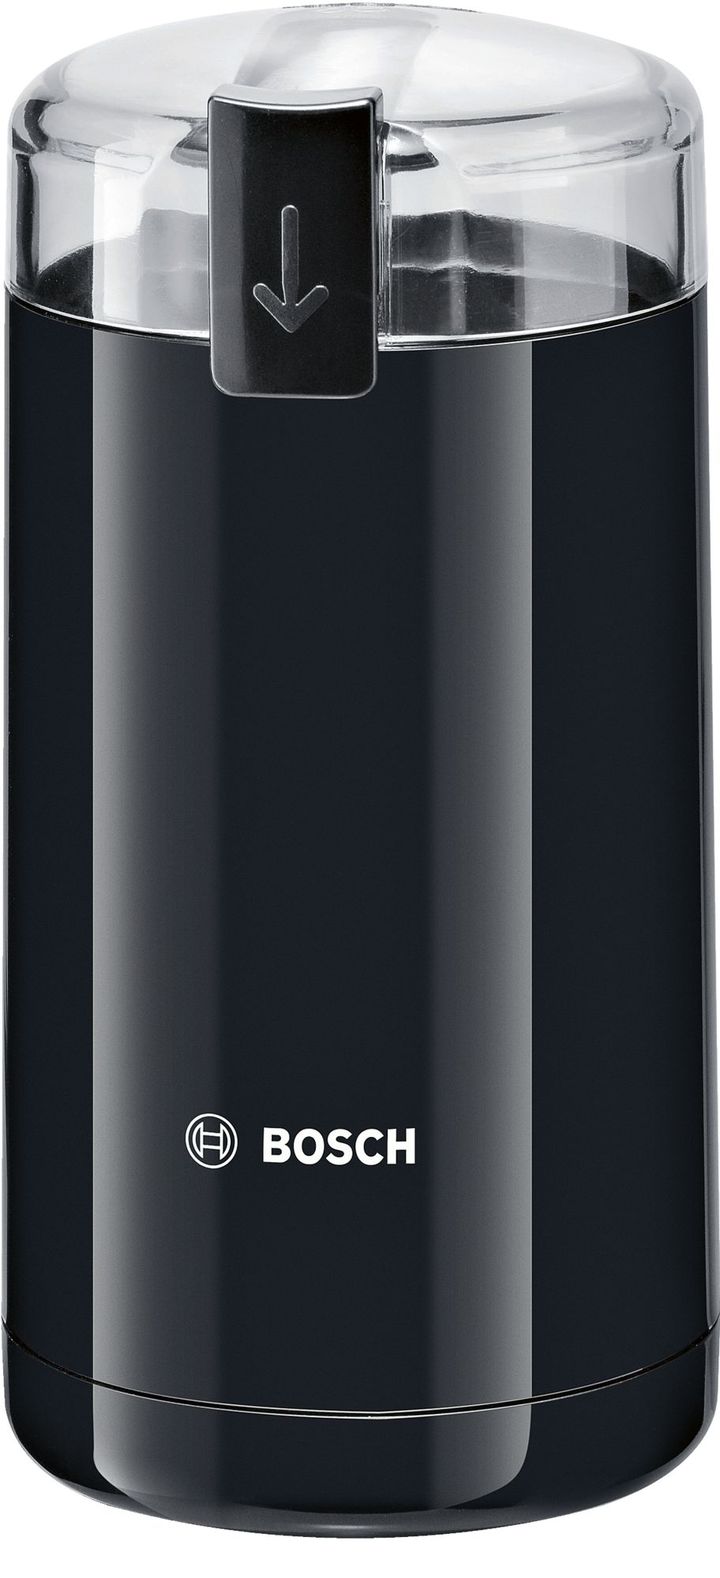 TSM6A013B coffee grinder with blade, Black Bosch